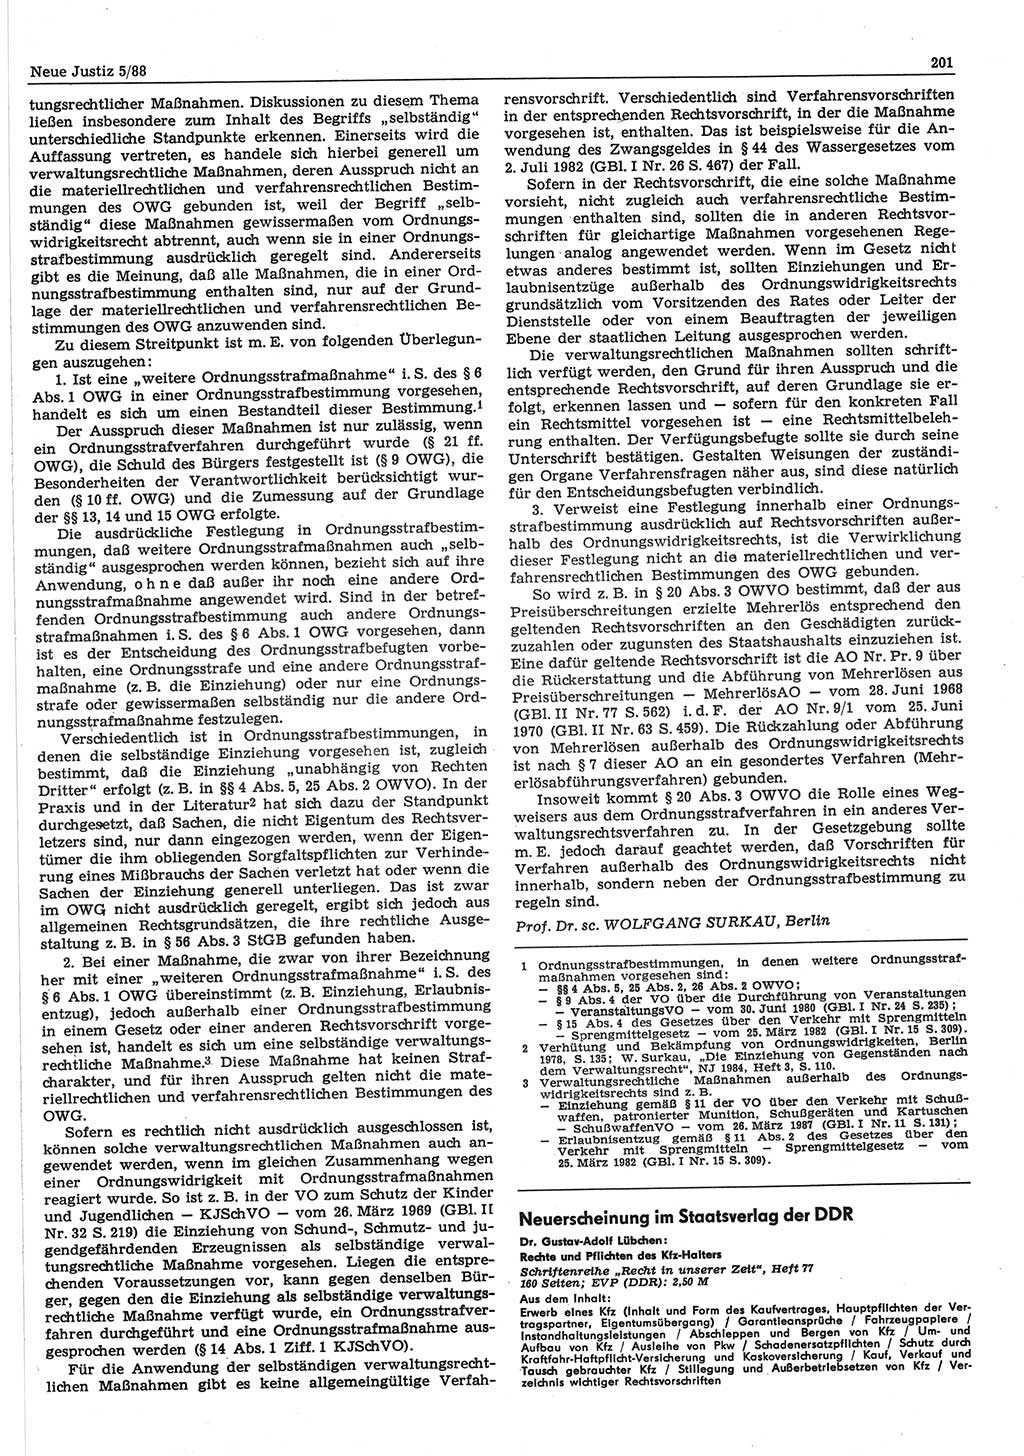 Neue Justiz (NJ), Zeitschrift für sozialistisches Recht und Gesetzlichkeit [Deutsche Demokratische Republik (DDR)], 42. Jahrgang 1988, Seite 201 (NJ DDR 1988, S. 201)